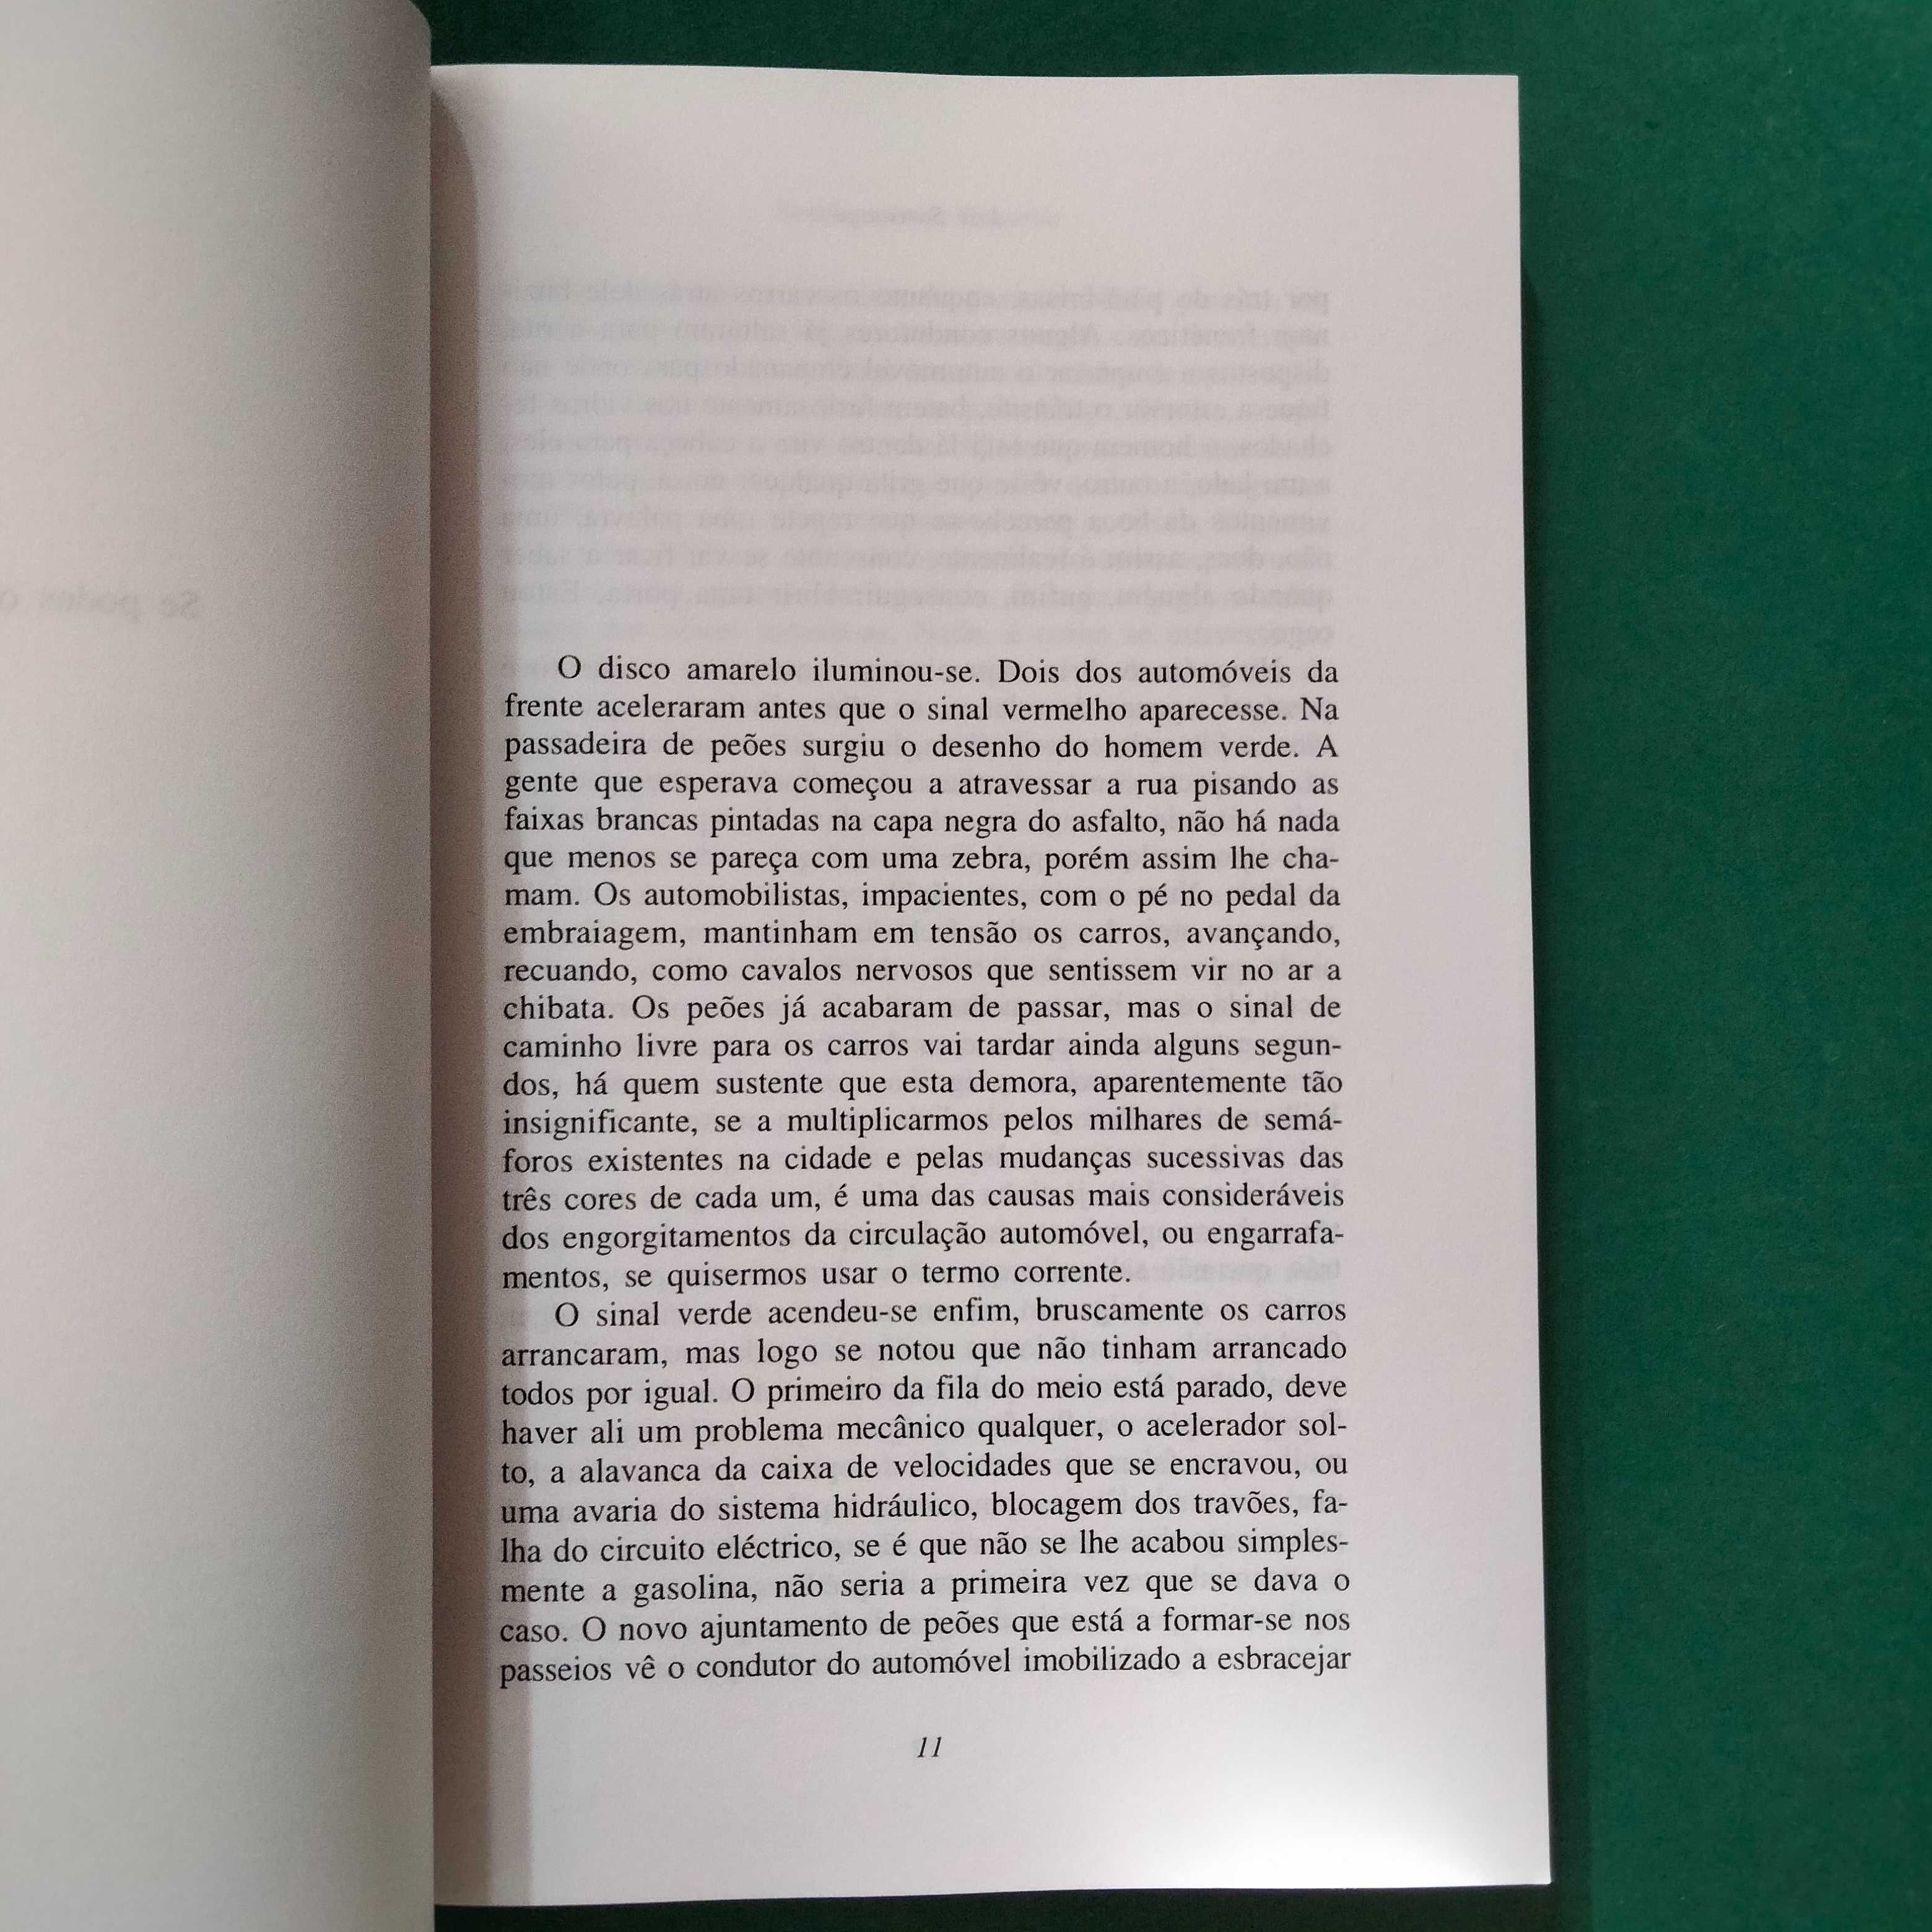 Ensaio Sobre a Cegueira - José Saramago (1ª Edição)